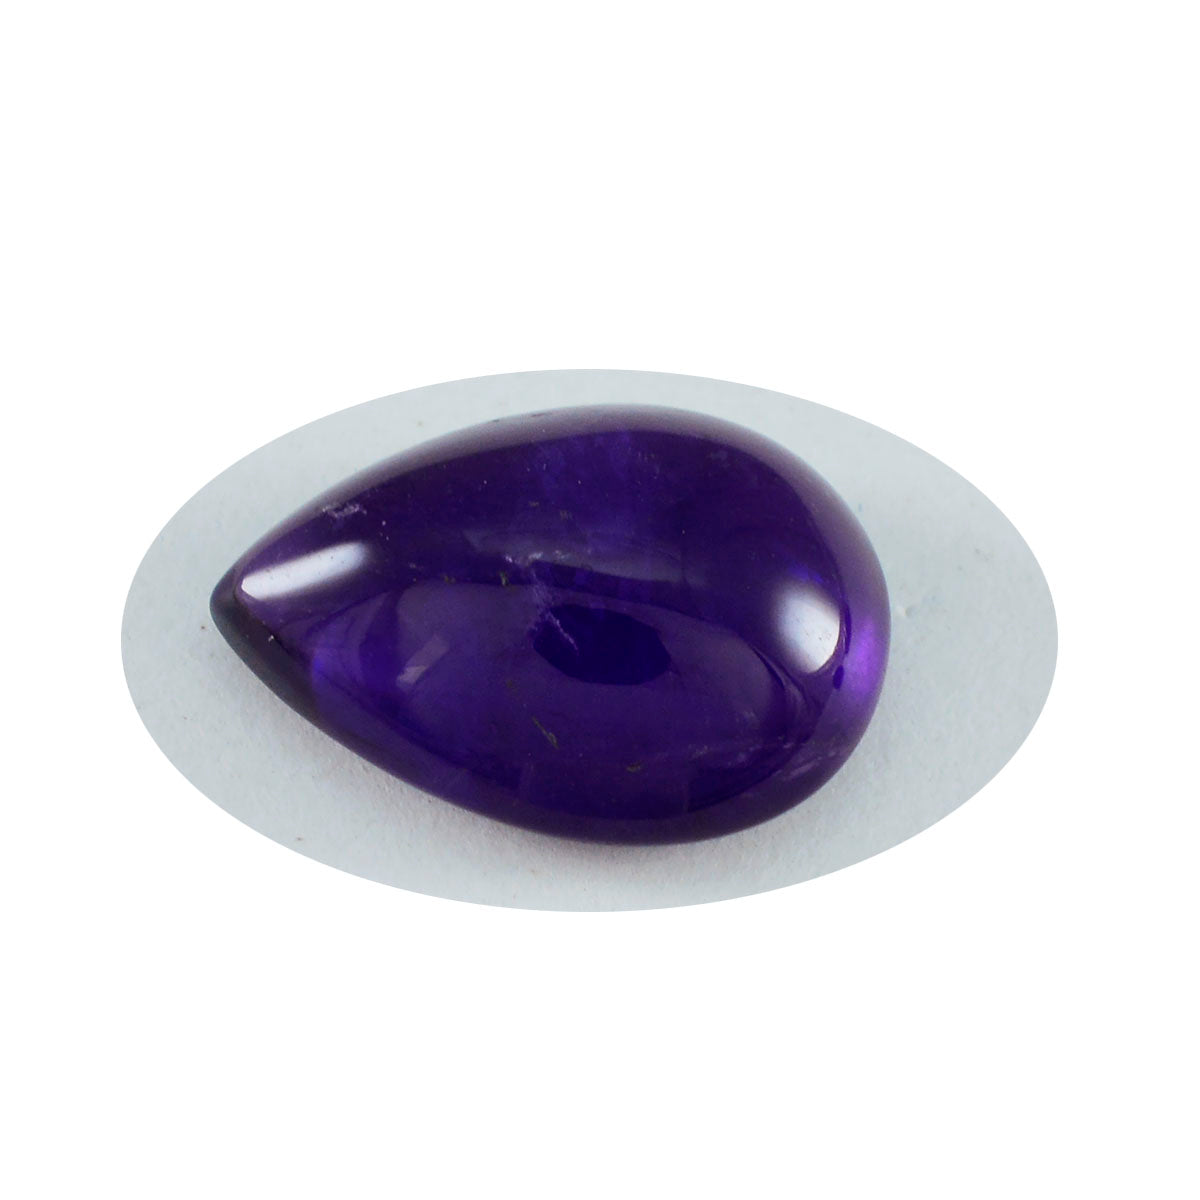 riyogems 1 pz cabochon di ametista viola 12x16 mm a forma di pera, pietra di meravigliosa qualità